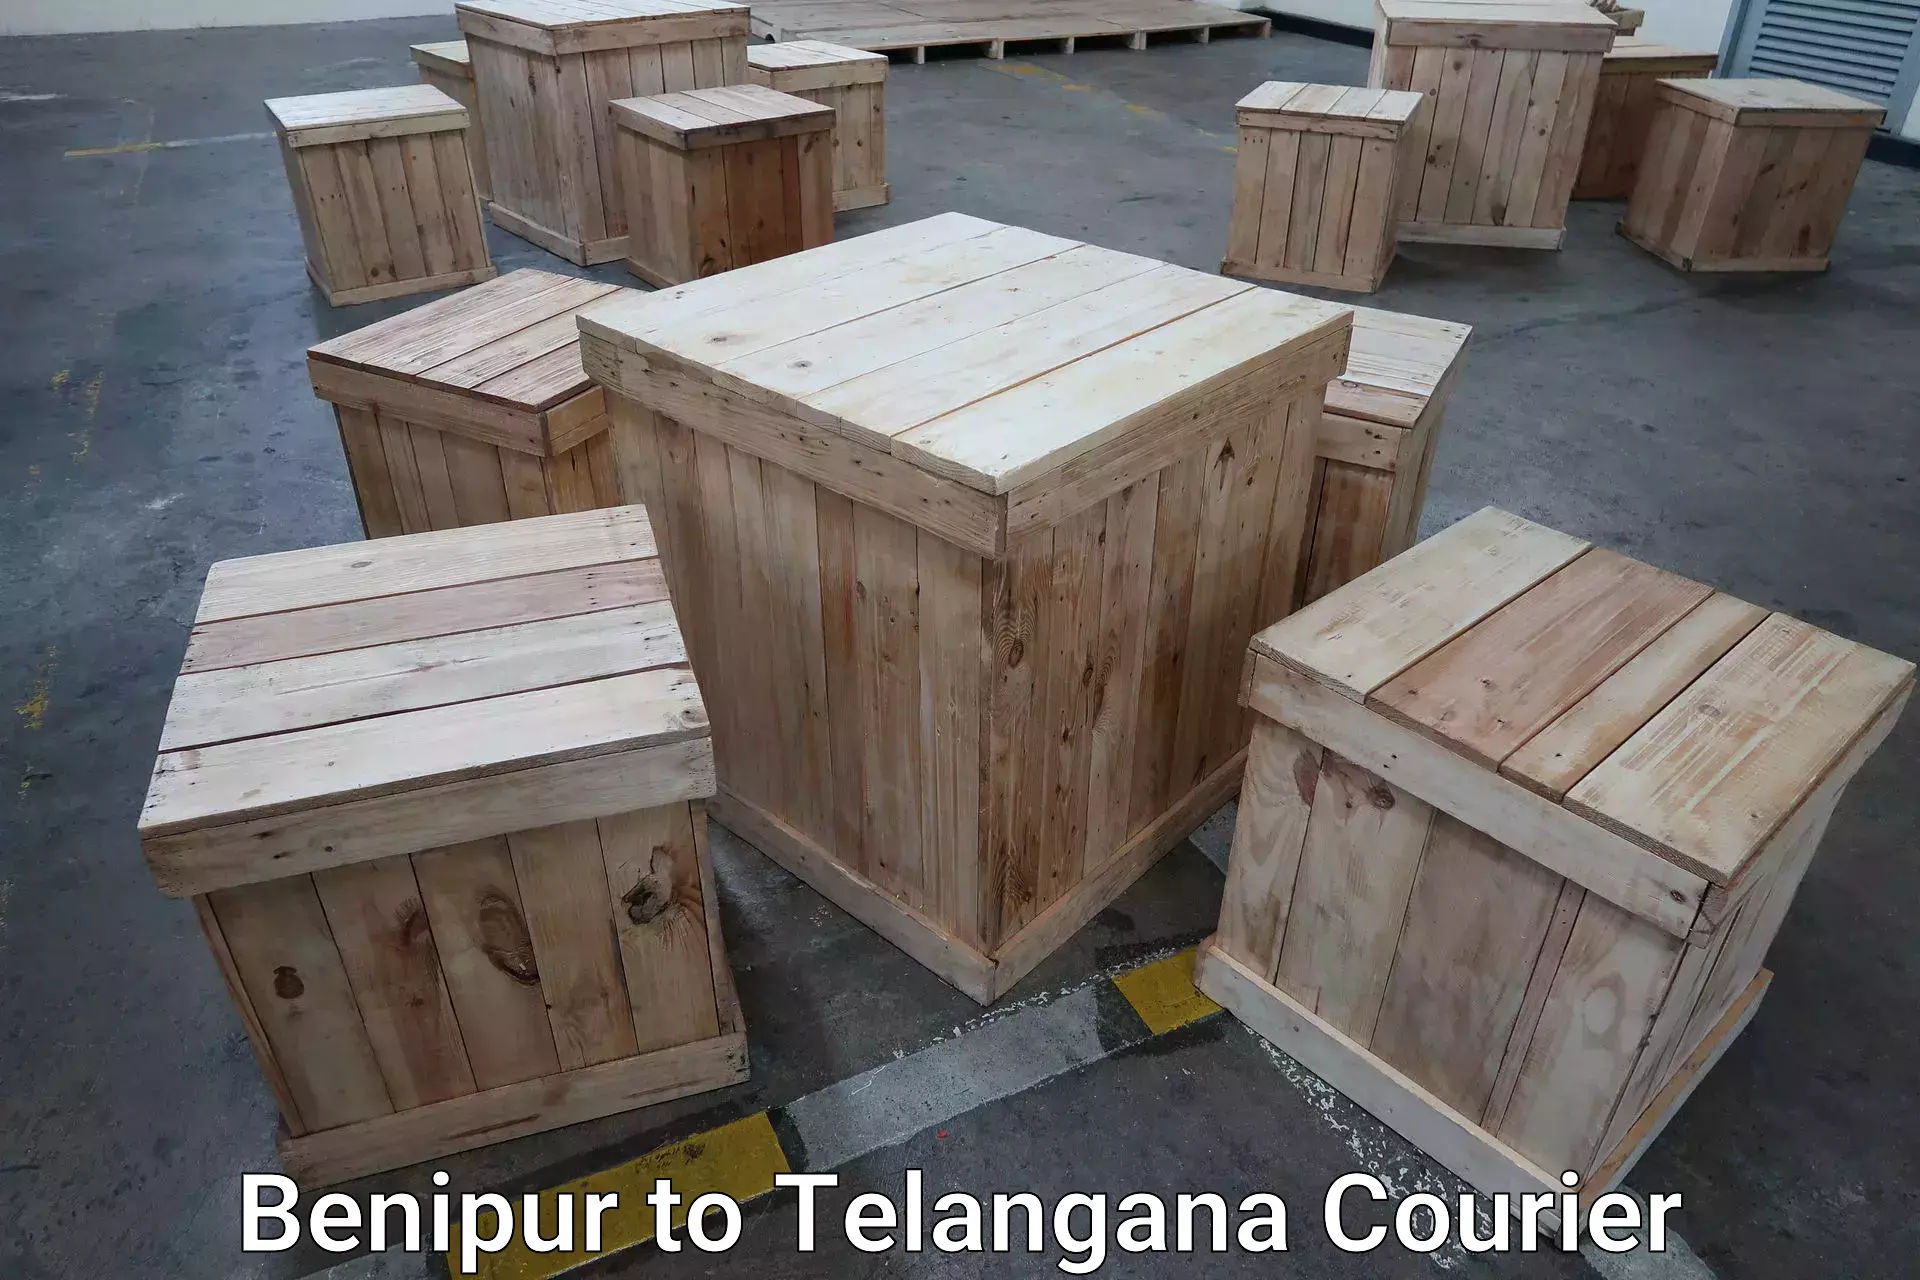 Baggage transport services Benipur to Telangana